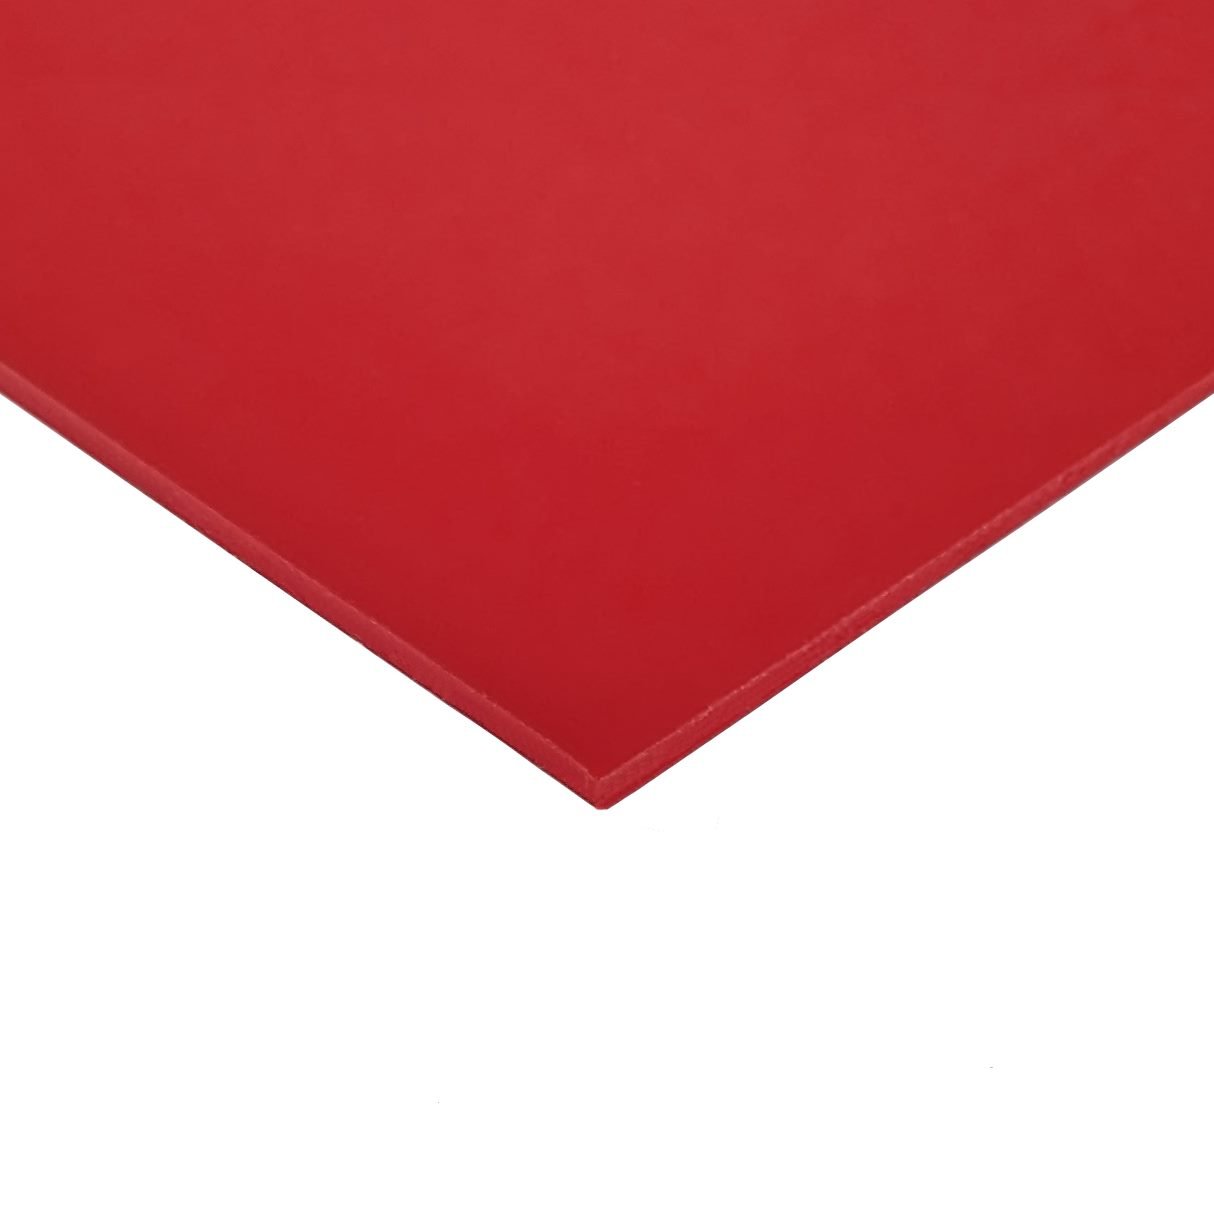 Red Type 1 PVC Sheet